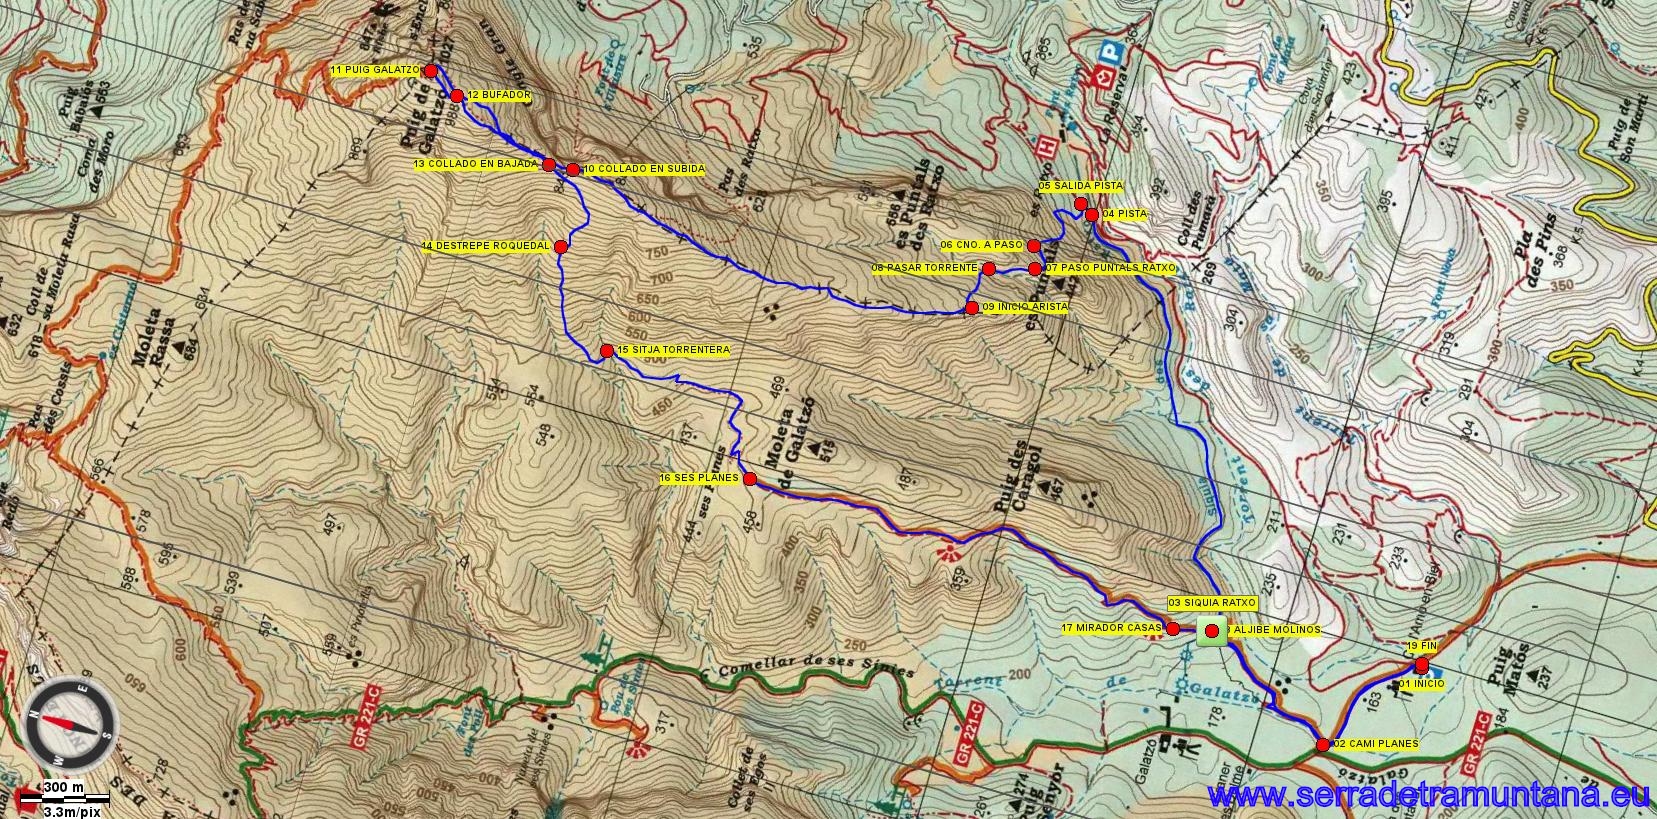 Mapa de la Editorial Alpina con el trazo de la ruta realizada